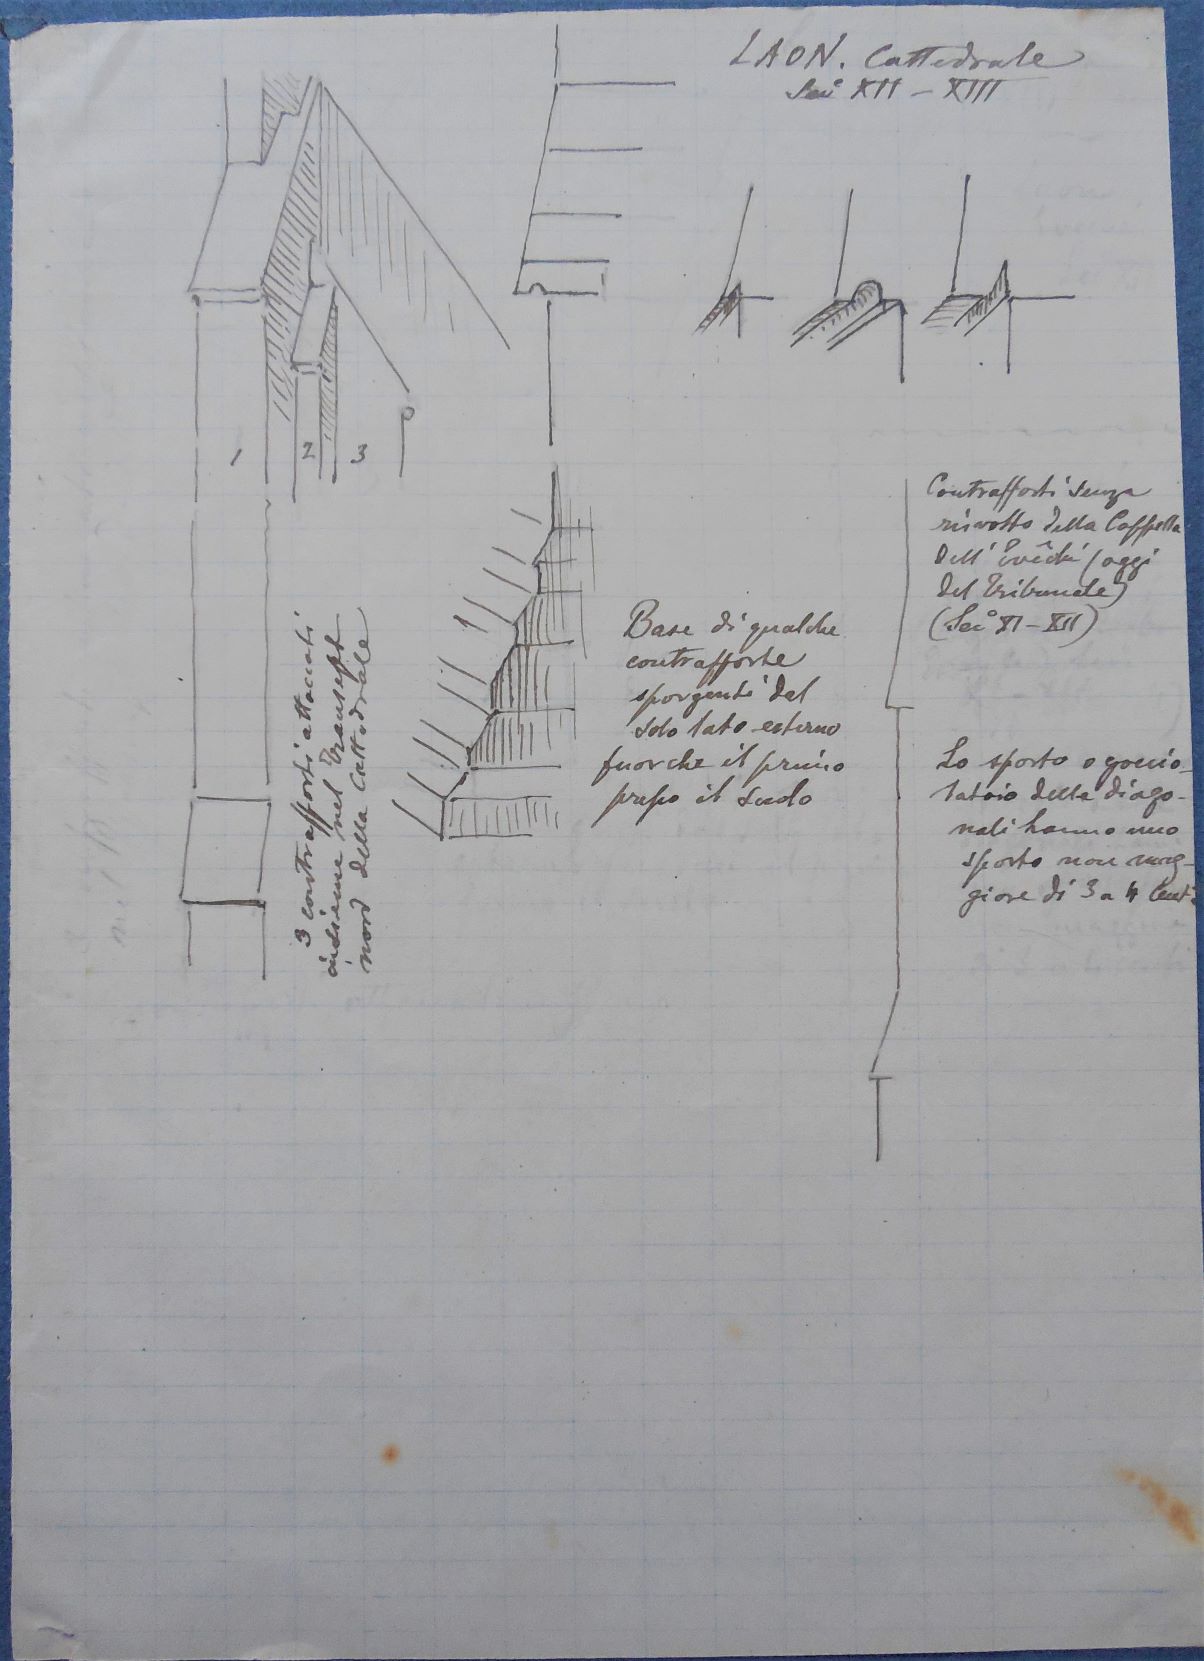 Laon, cattedrale, Rilievo di dettagli architettonici della cattedrale di Laon (taccuino di disegni) di D'Andrade Alfredo (inizio sec. XX)